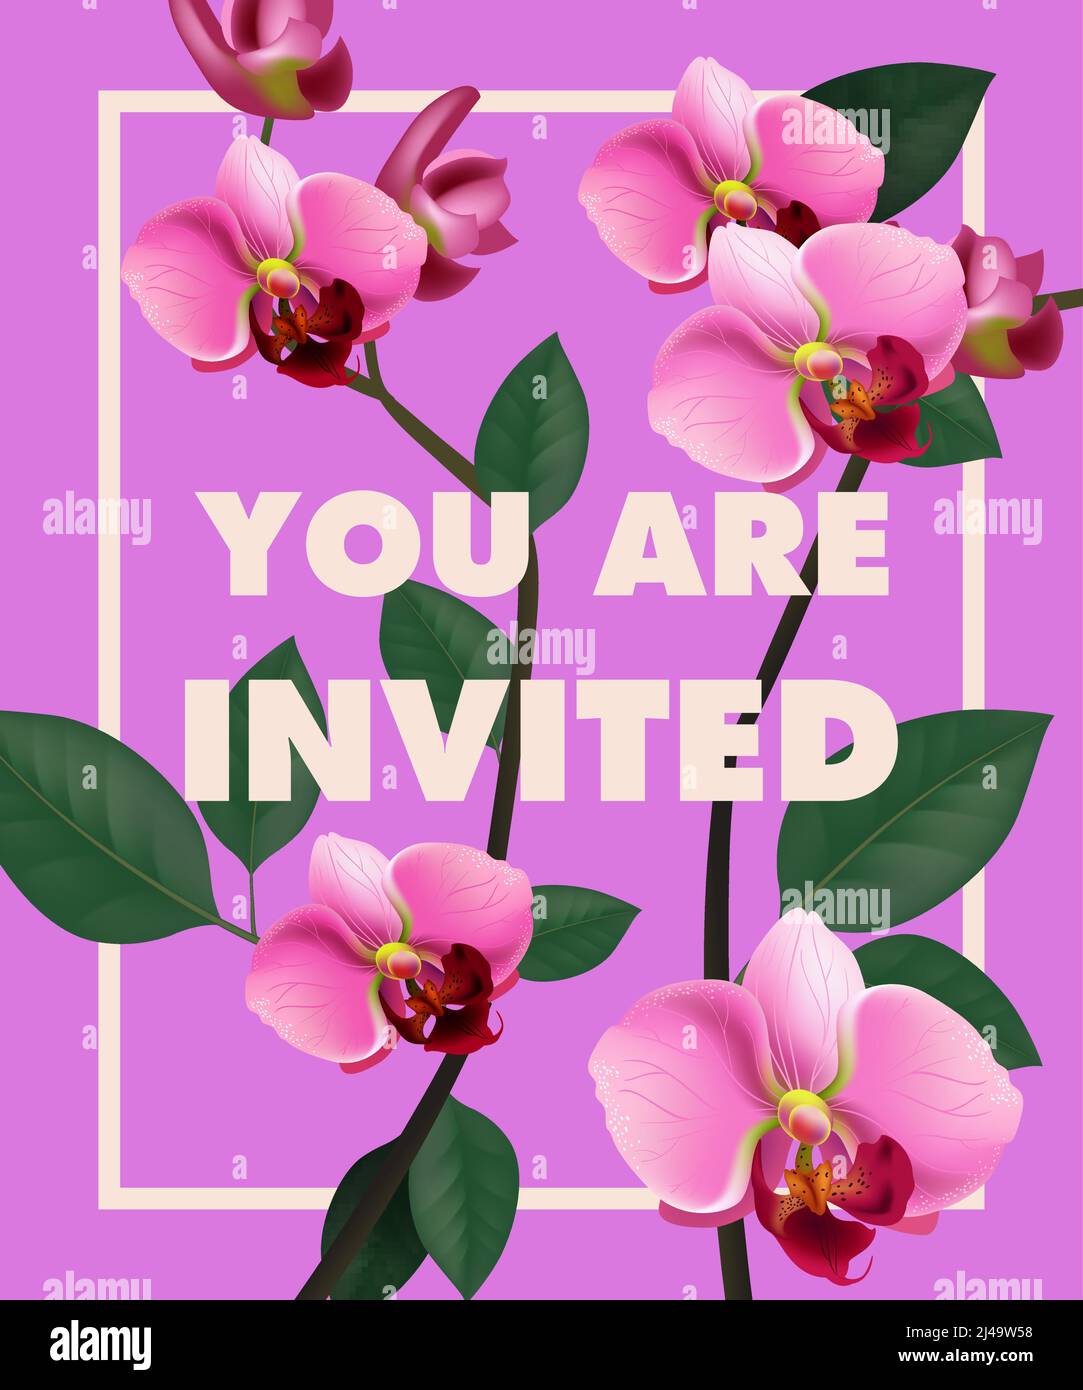 Vous êtes invité lettering avec orchidée rose sur fond violet. Texte manuscrit, calligraphie. Concept de célébration. Peut être utilisé pour l'invitation, la circulaire Illustration de Vecteur